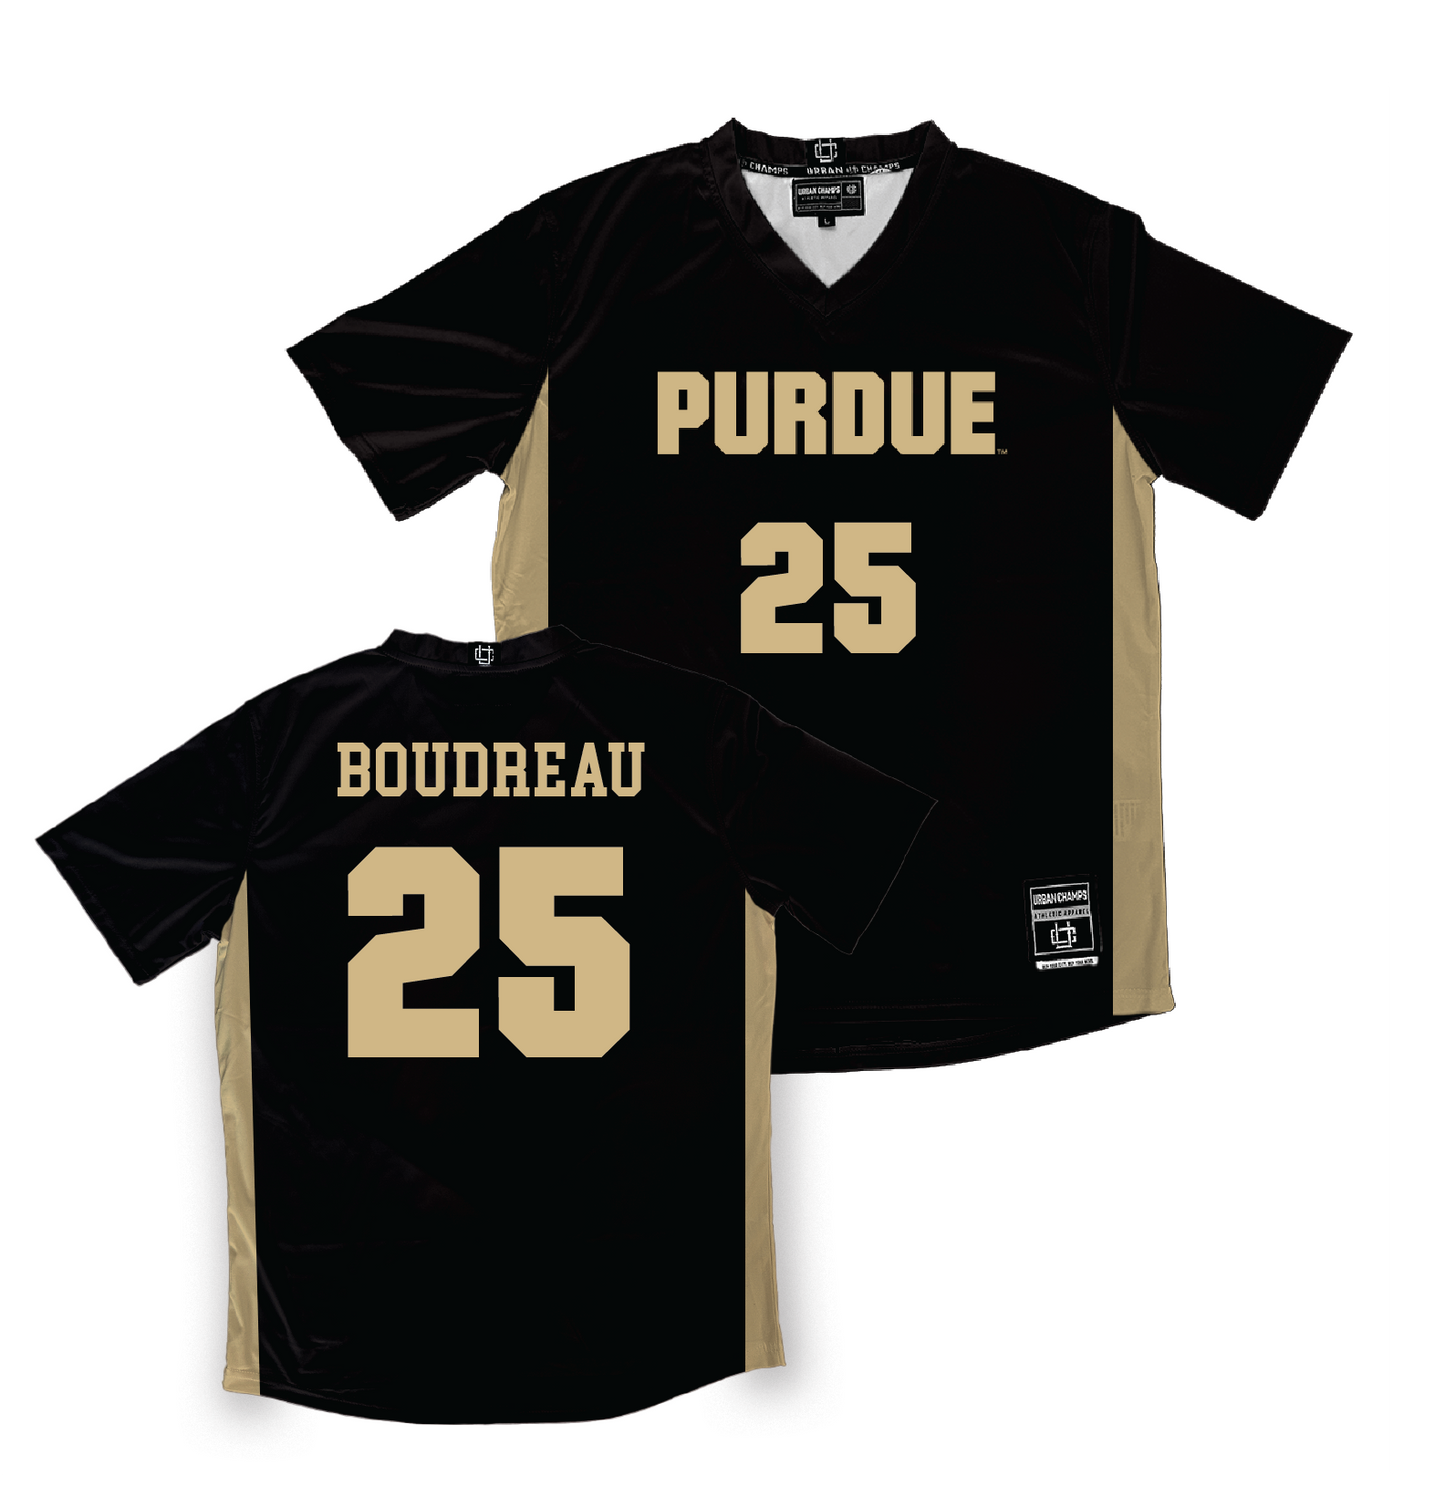 Purdue Women's Soccer Black Jersey - Sydney Boudreau #25